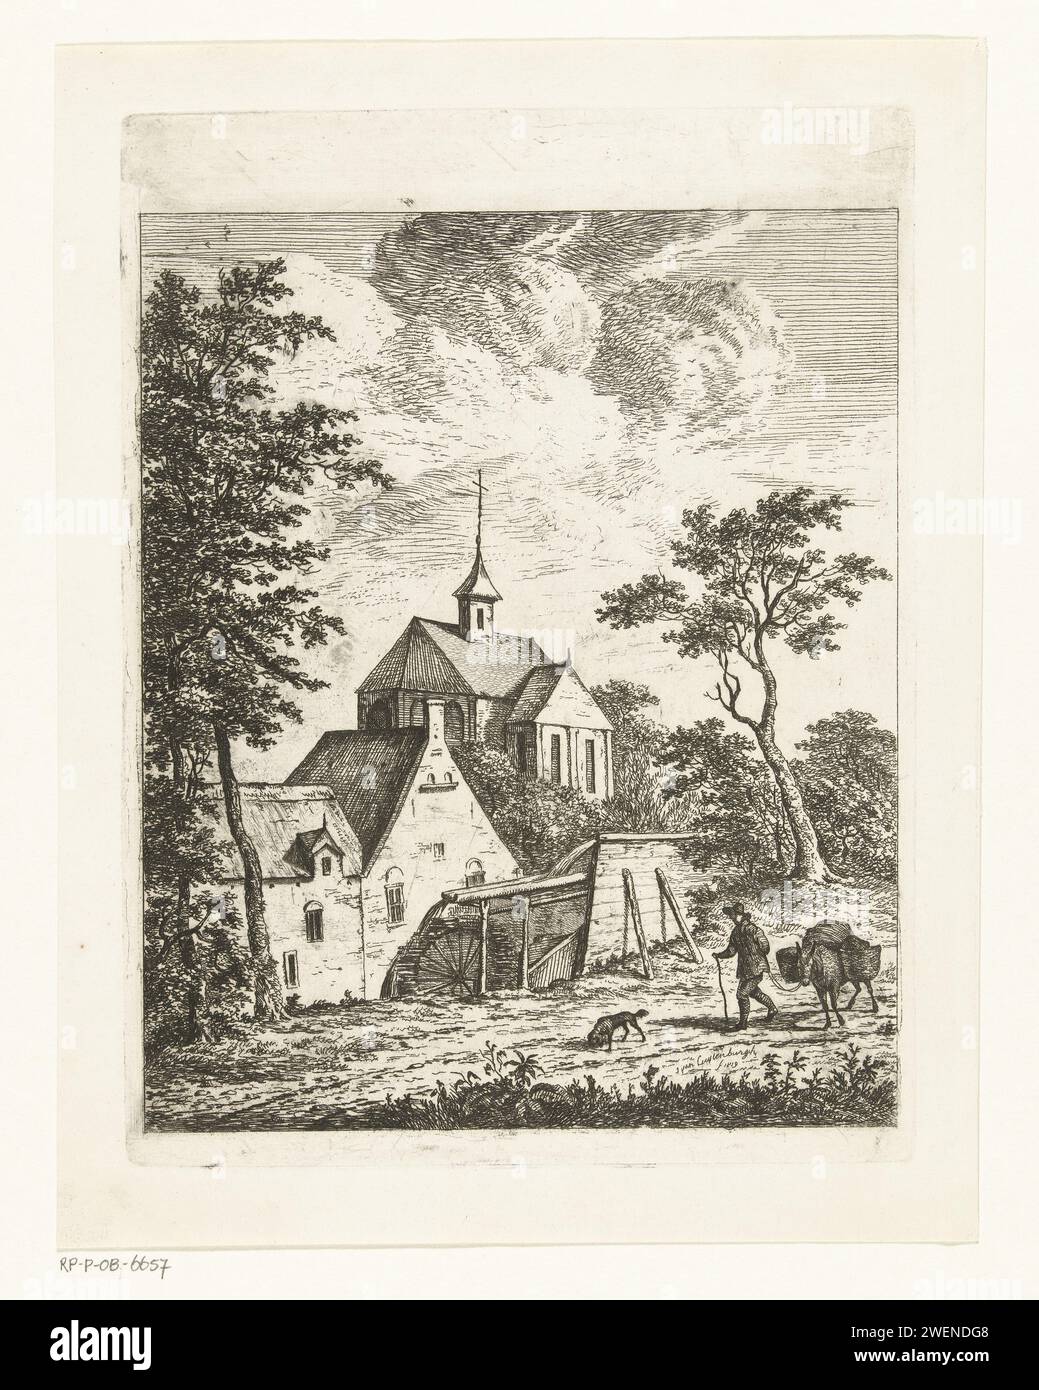 Paesaggio con chiesa e mulino ad acqua, Johannes van Cuylenburgh, 1803 - 1841 carta stampata acquaforte mulino ad acqua in paesaggio Foto Stock